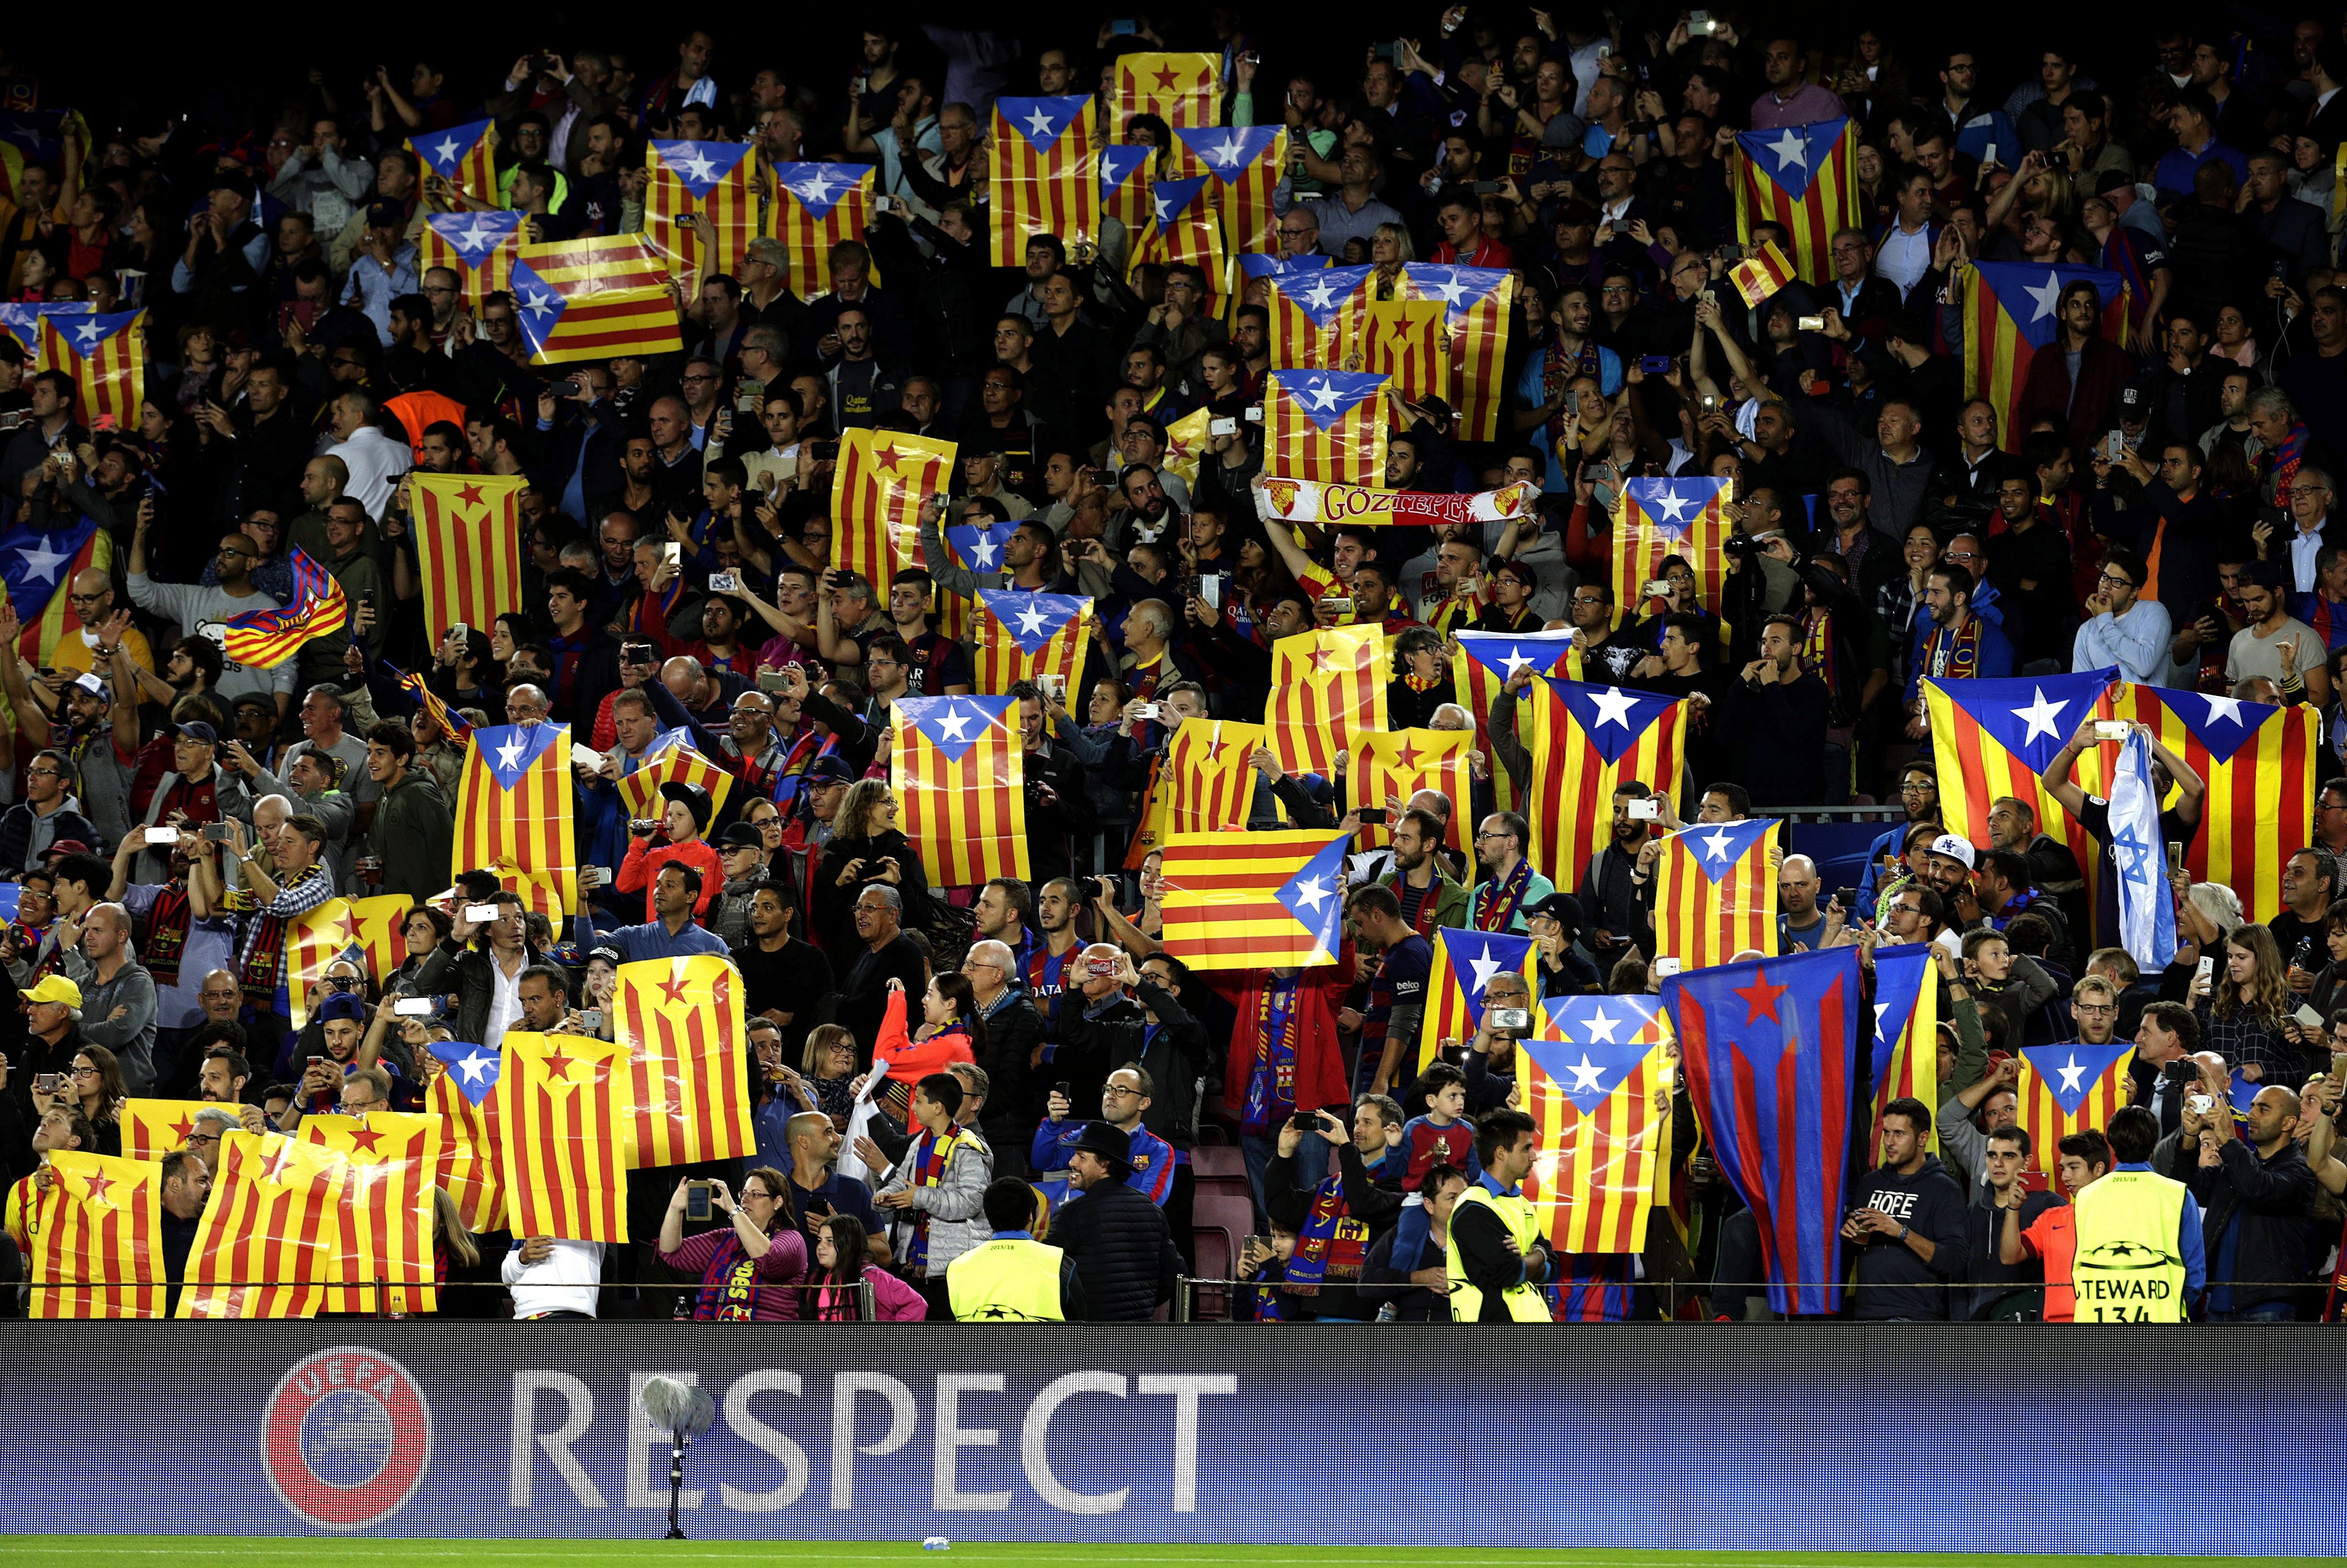 La UEFA arxiva els expedients del Barça per exhibir estelades al Camp Nou